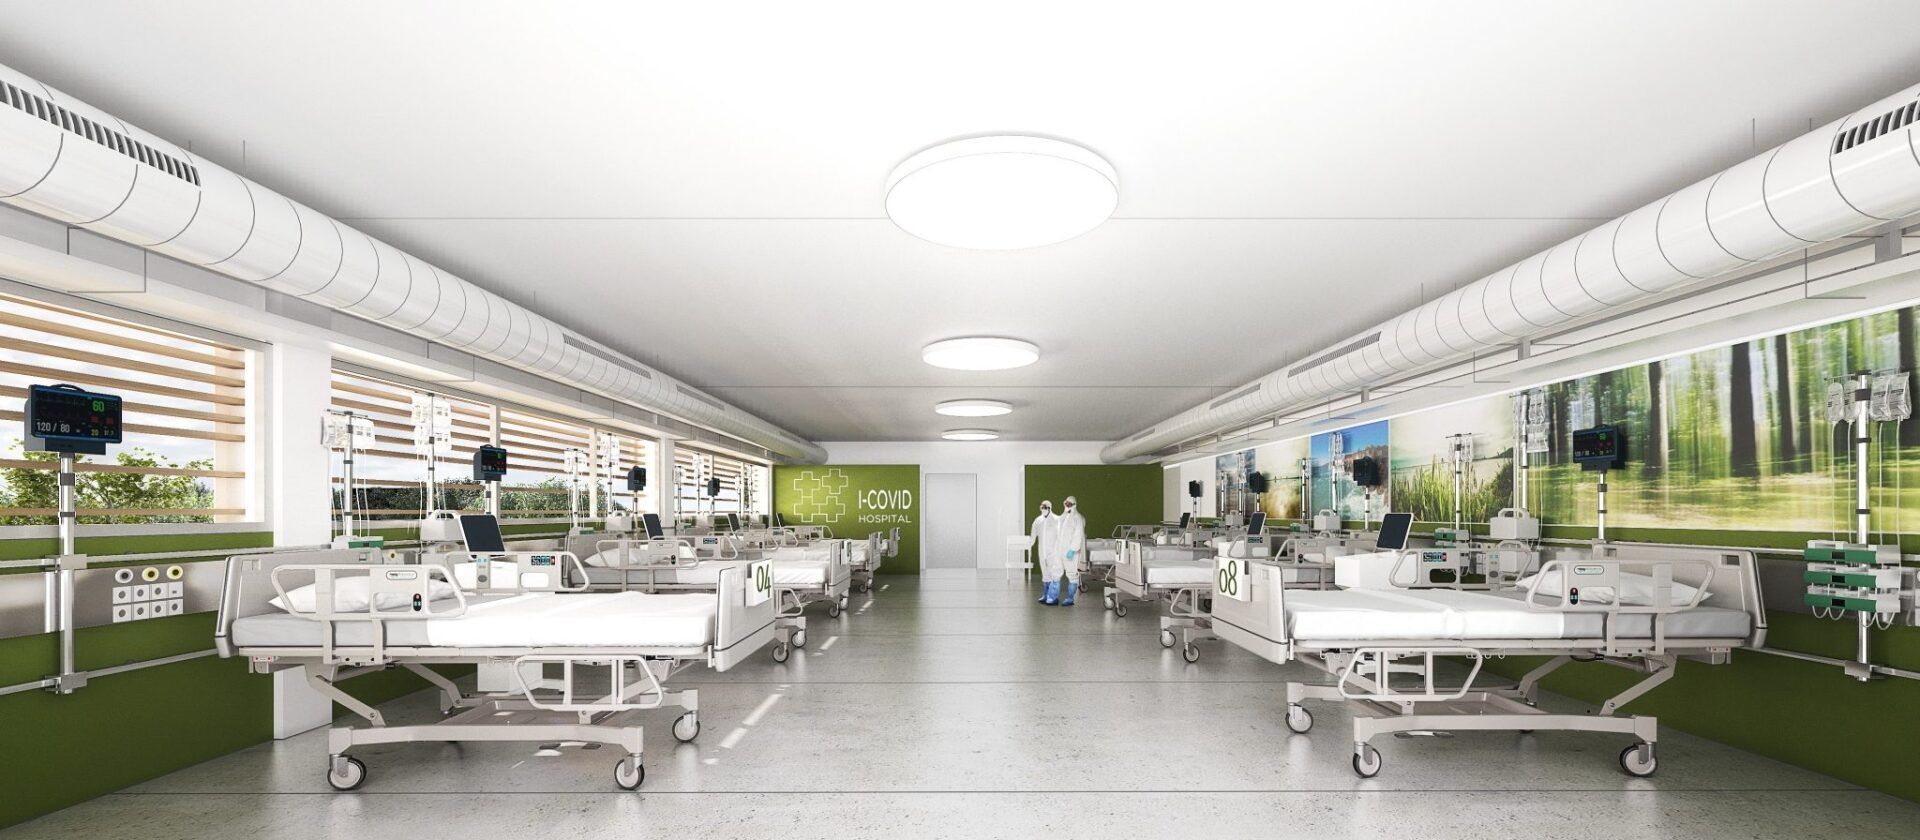 Imágenes interiores del Hospital de Bellvitge I-Covid Compact.